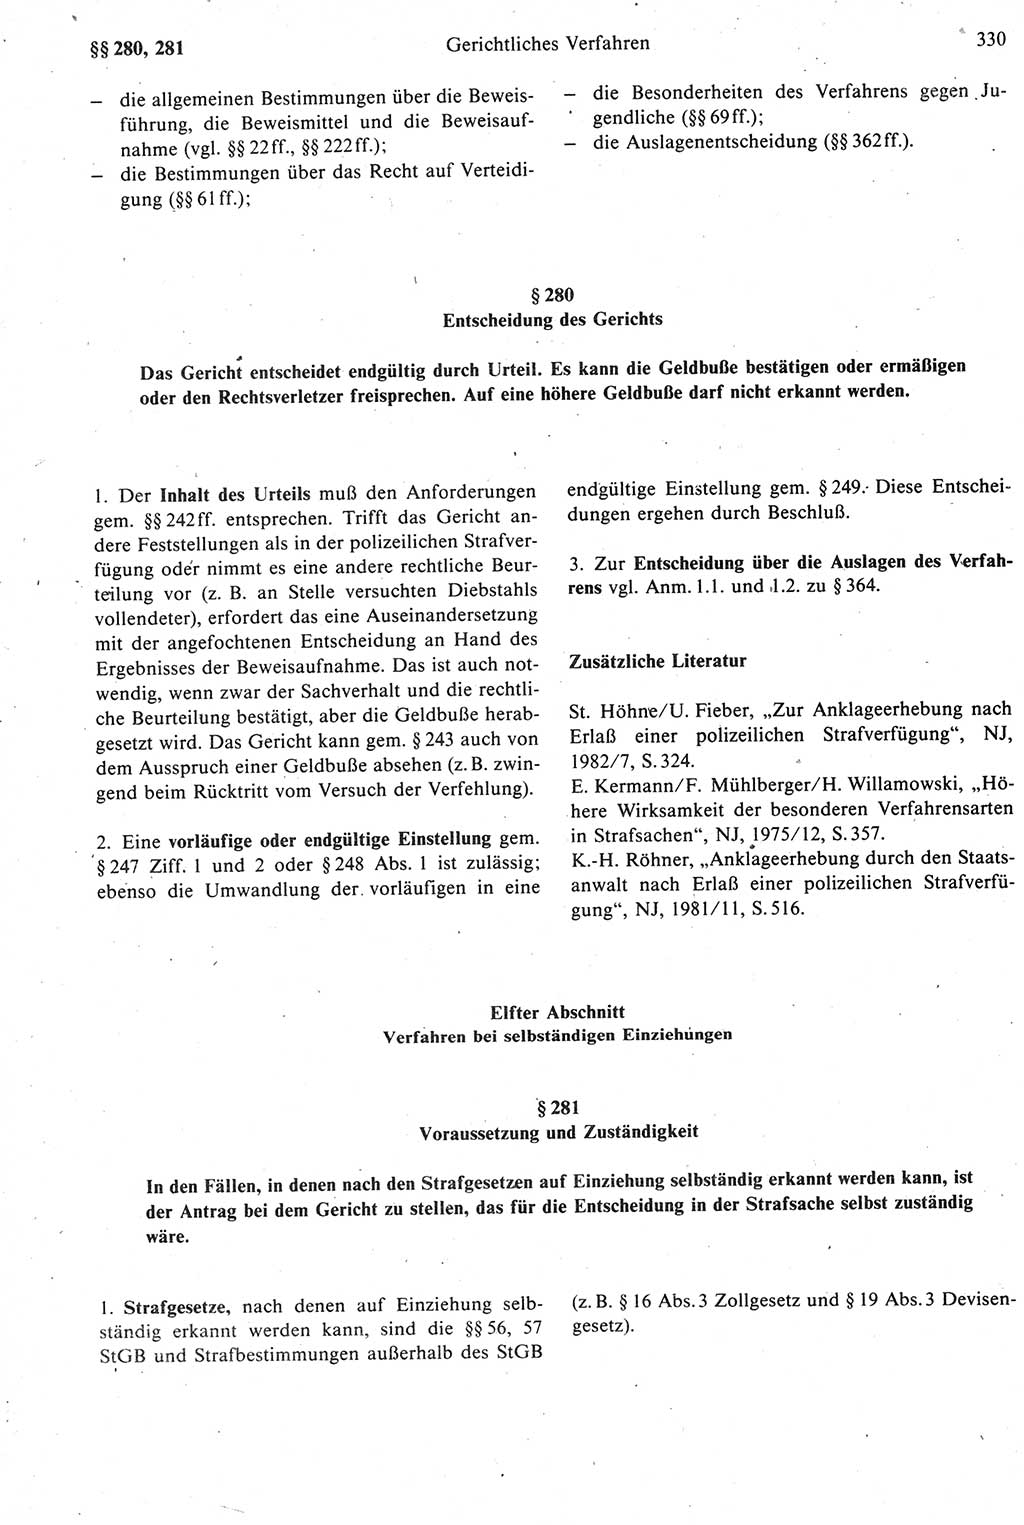 Strafprozeßrecht der DDR [Deutsche Demokratische Republik], Kommentar zur Strafprozeßordnung (StPO) 1987, Seite 330 (Strafprozeßr. DDR Komm. StPO 1987, S. 330)